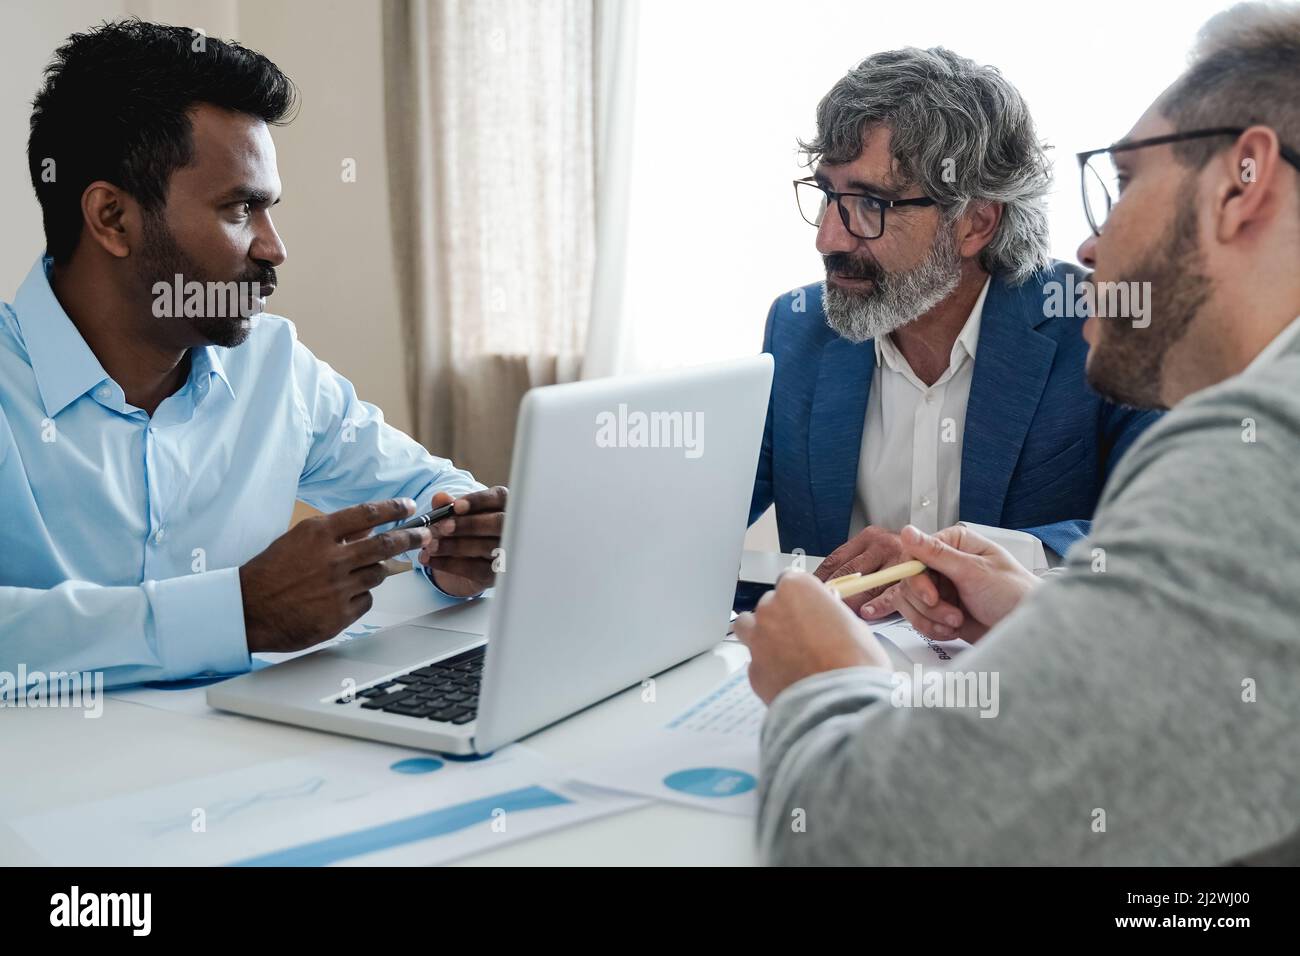 Les gens d'affaires multiethniques travaillent ensemble à l'intérieur du bureau de la banque - Focus sur le visage de l'homme indien Banque D'Images